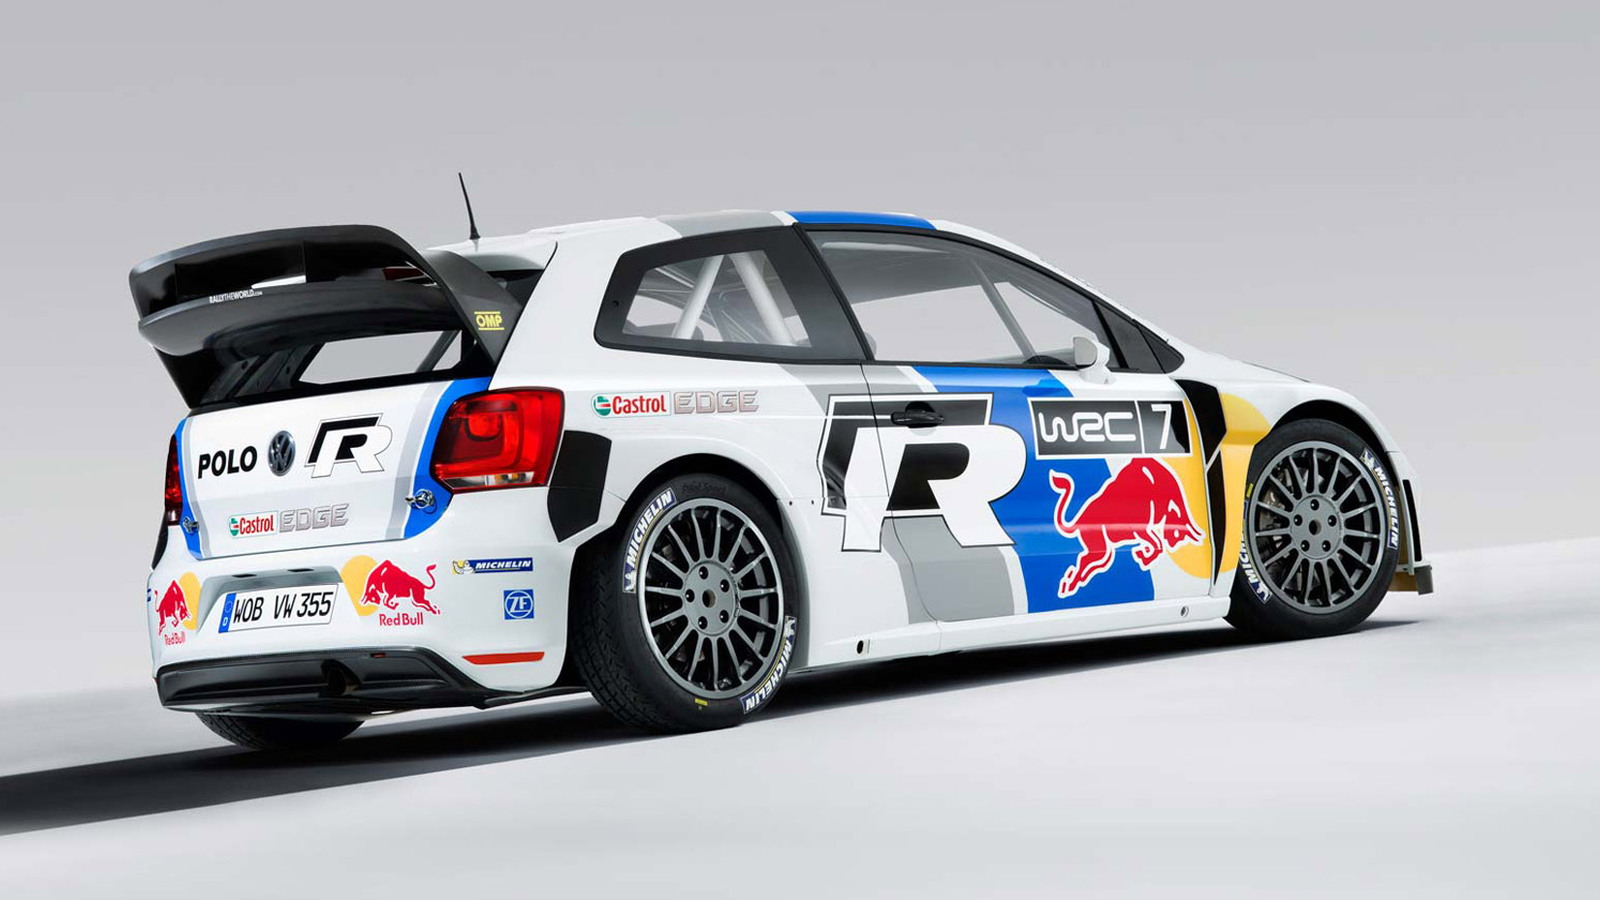 2013 Volkswagen Polo R WRC race car